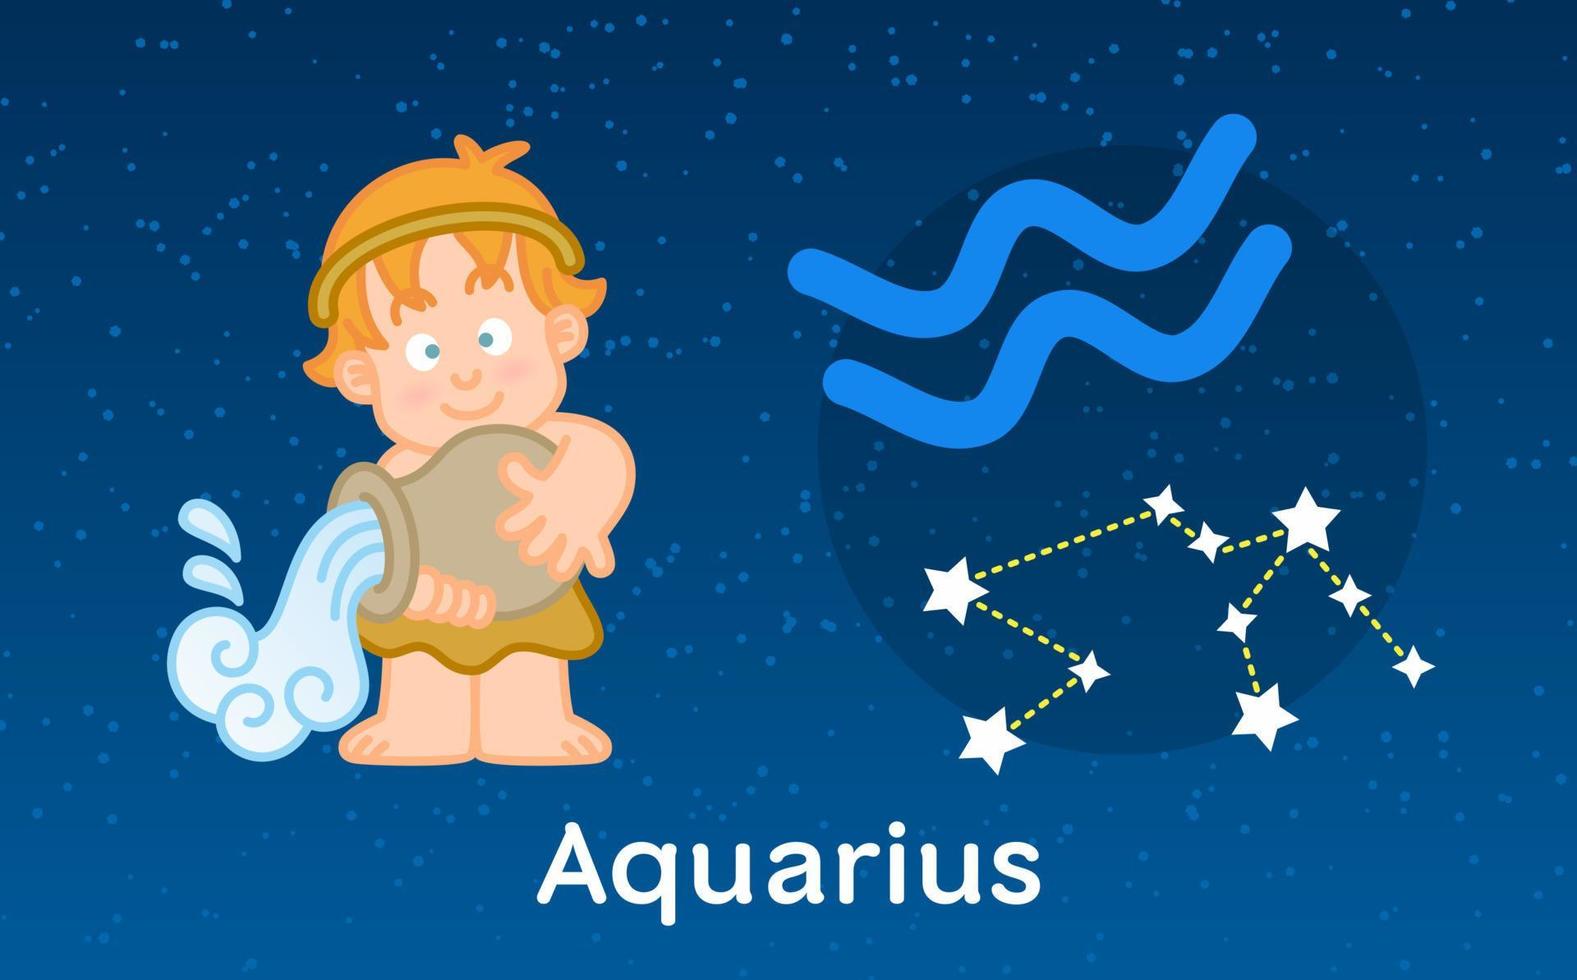 simpatico cartone animato astrologia dello zodiaco acquario con segno di costellazioni. illustrazione vettoriale sullo sfondo del cielo di stelle